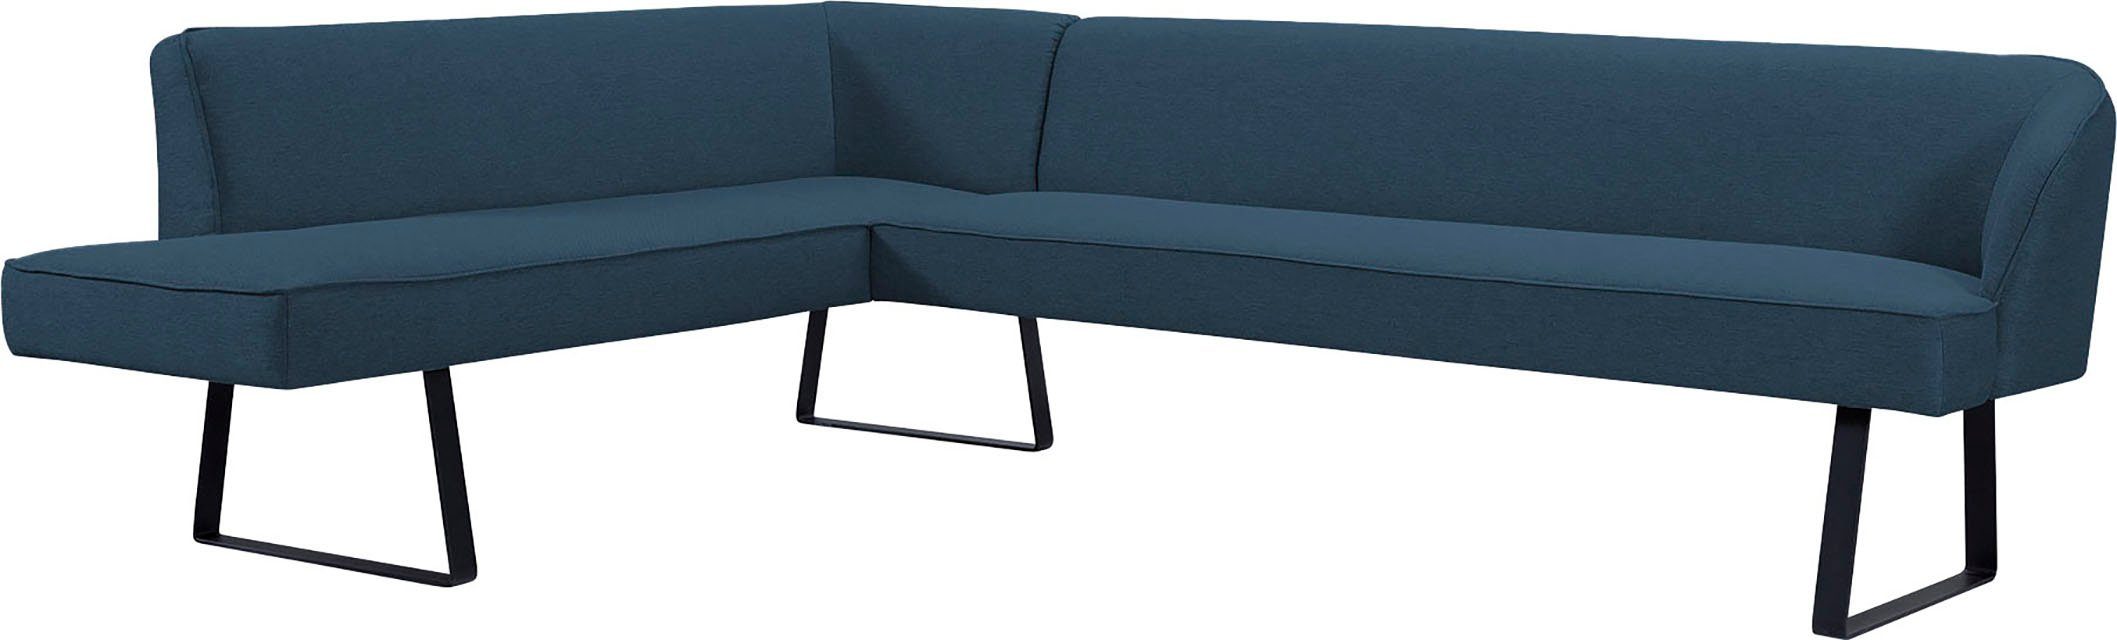 exxpo - sofa fashion und Bezug Metallfüßen, Americano, mit Qualitäten Keder Eckbank in verschiedenen